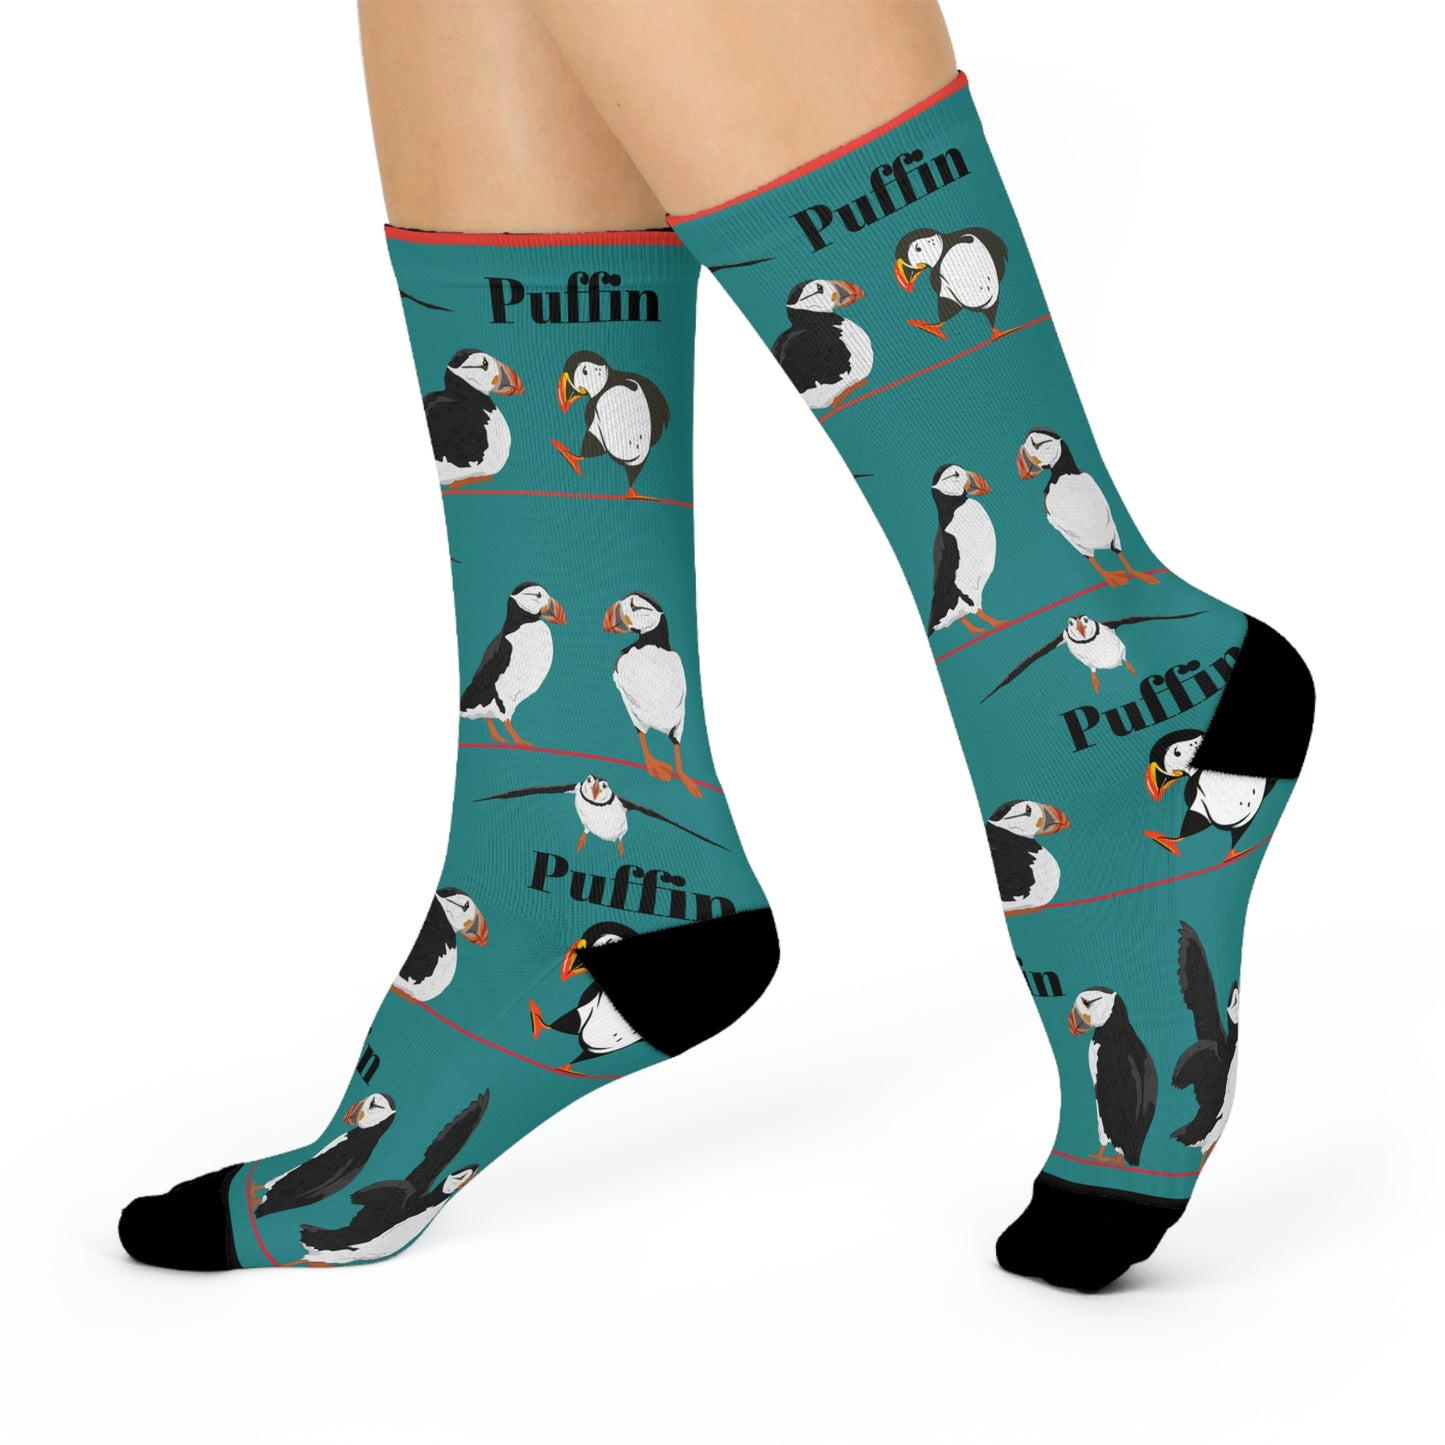 Puffin Socks!